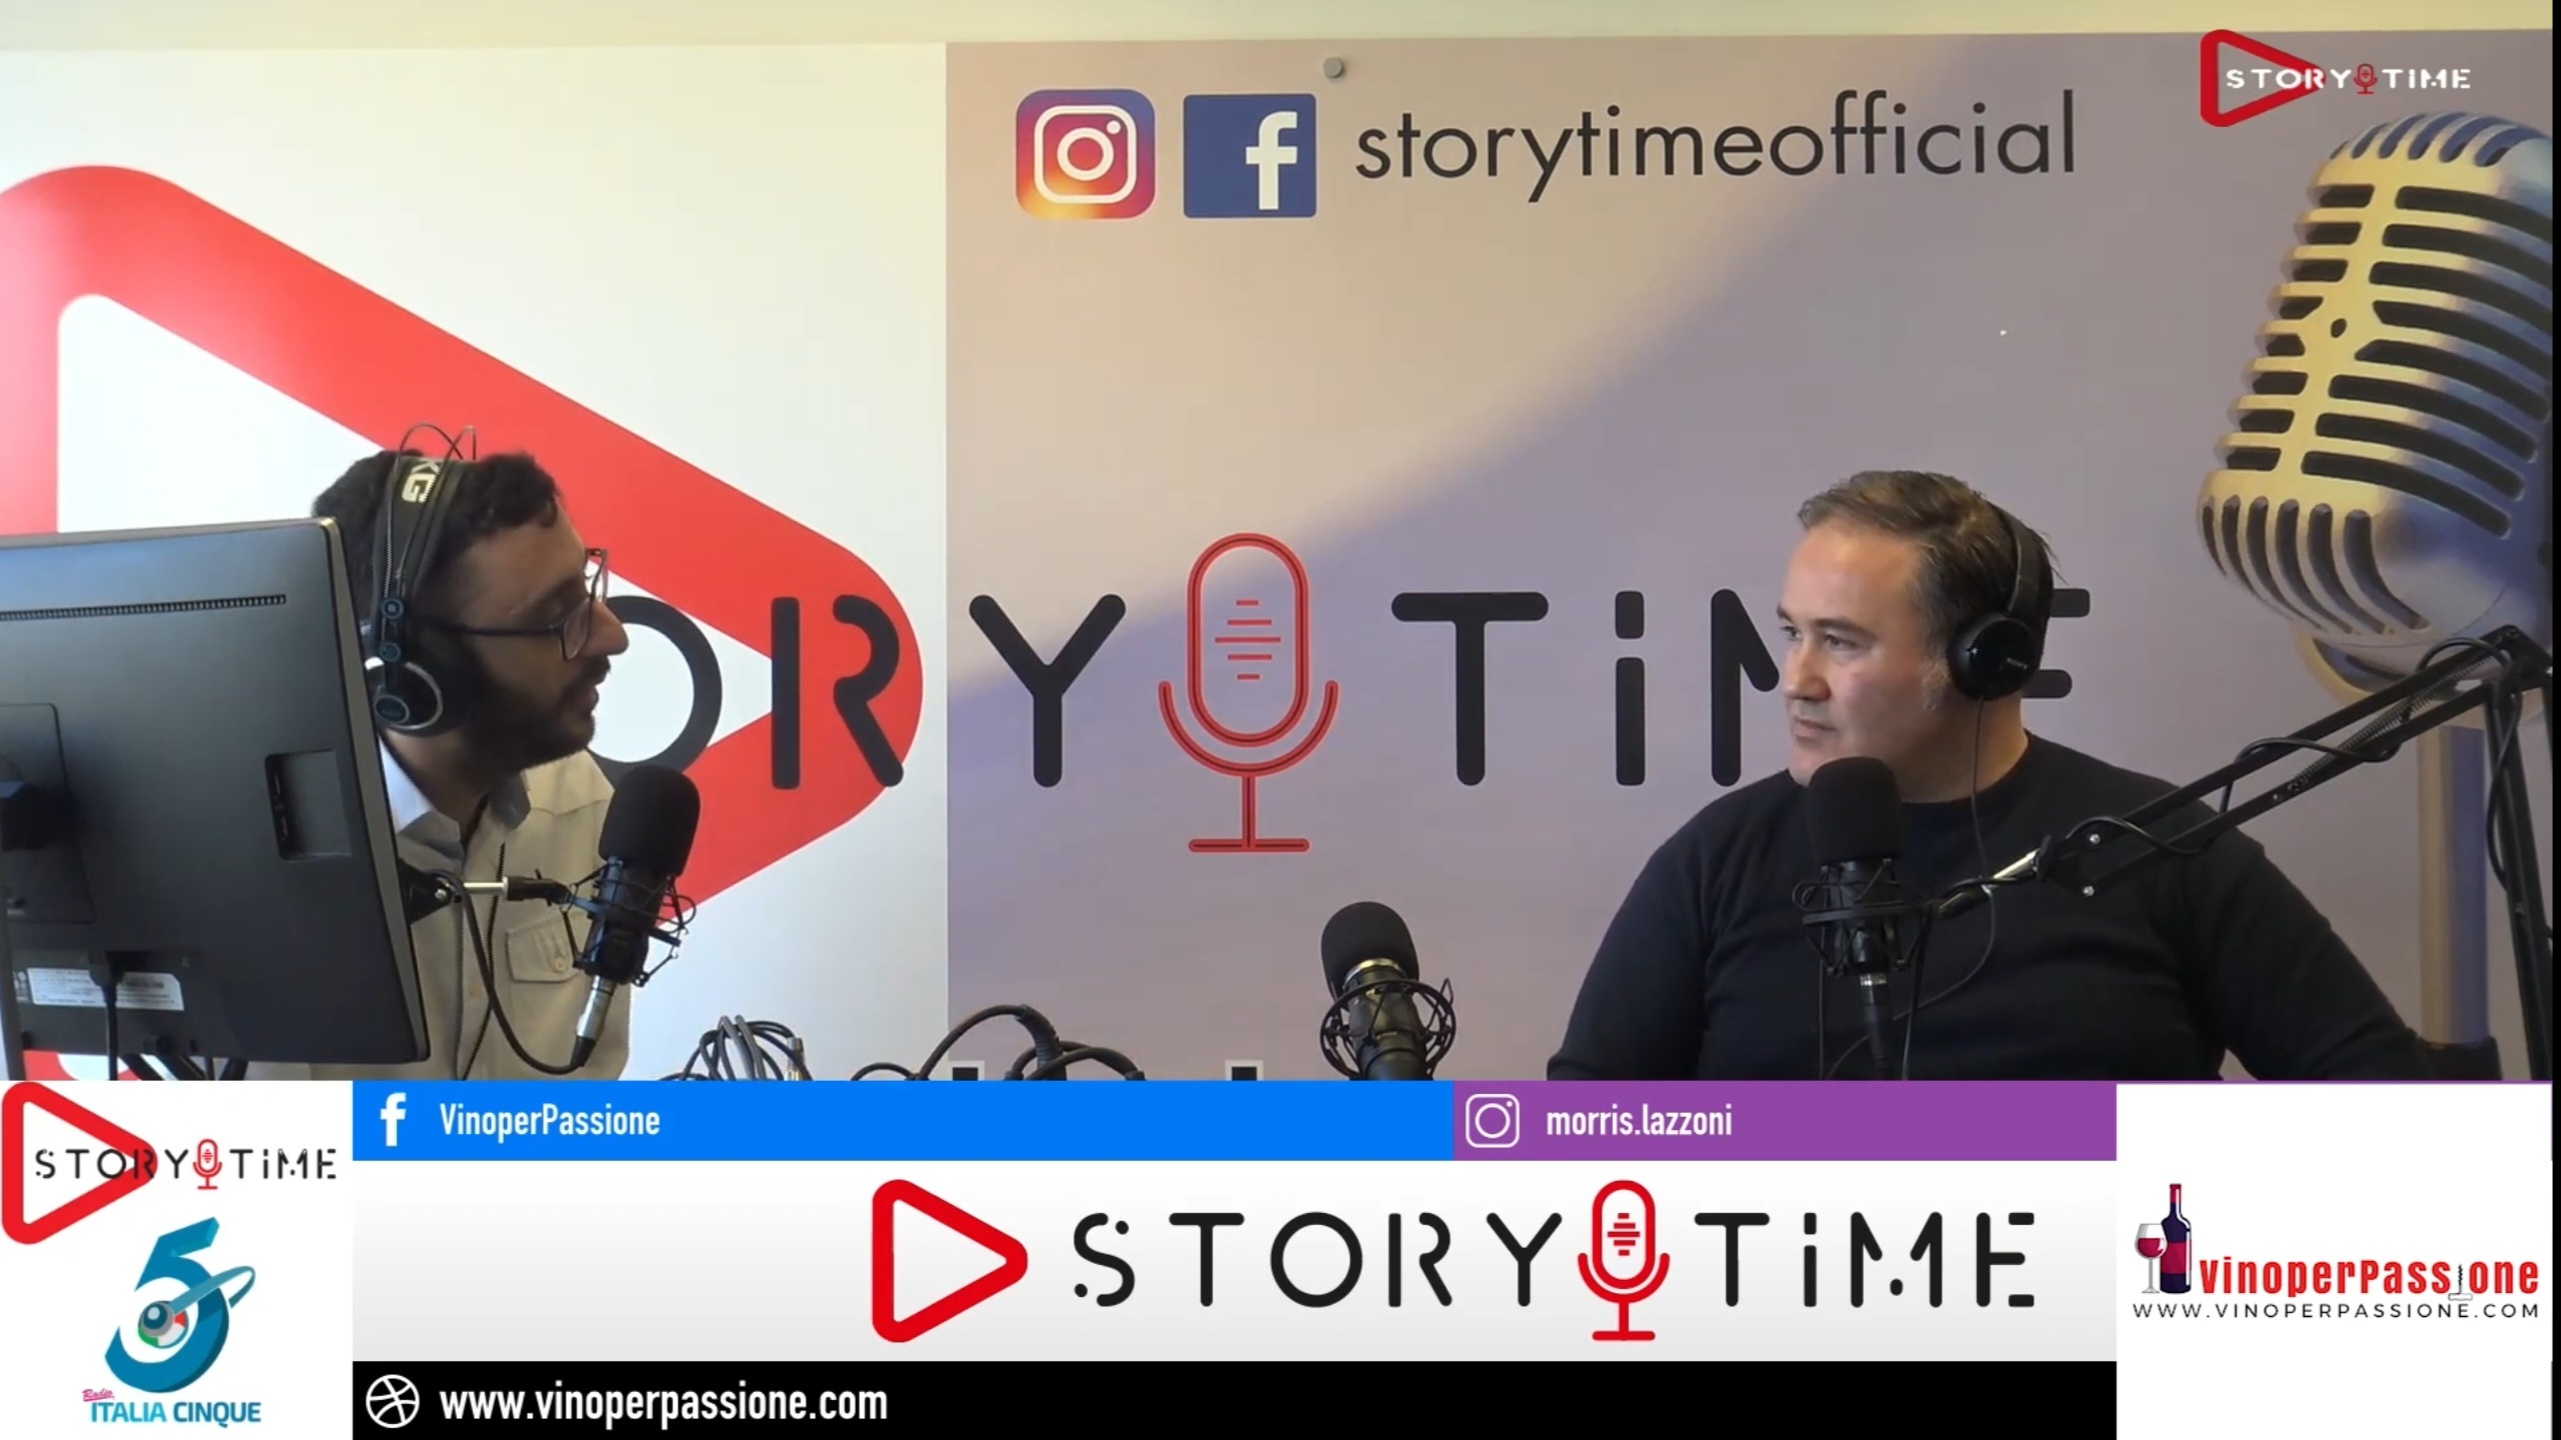 Parlo di me e di VinoperPassione in un'intervista radiofonica a Storytime